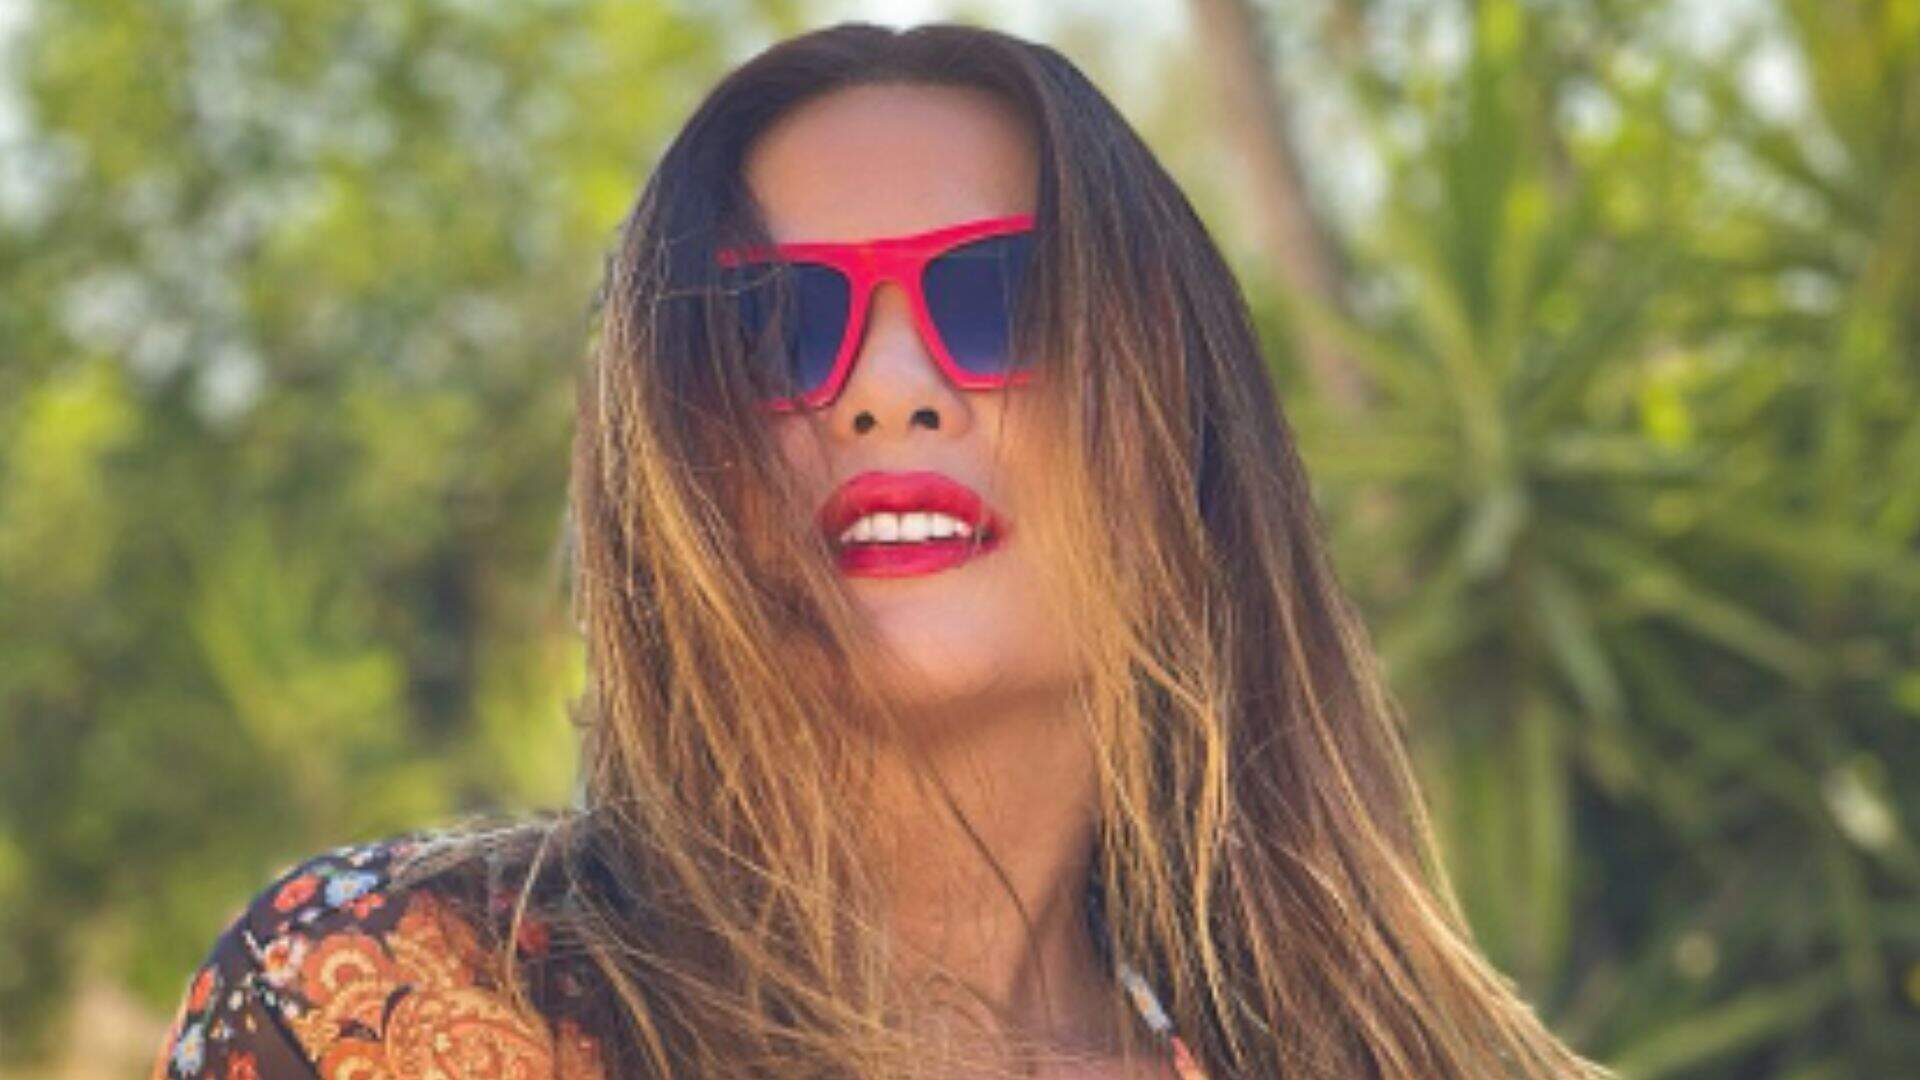 Geisy Arruda deixa portugueses chocados ao mostrar bumbum à milanesa na praia: “Cavei mesmo” - Metropolitana FM